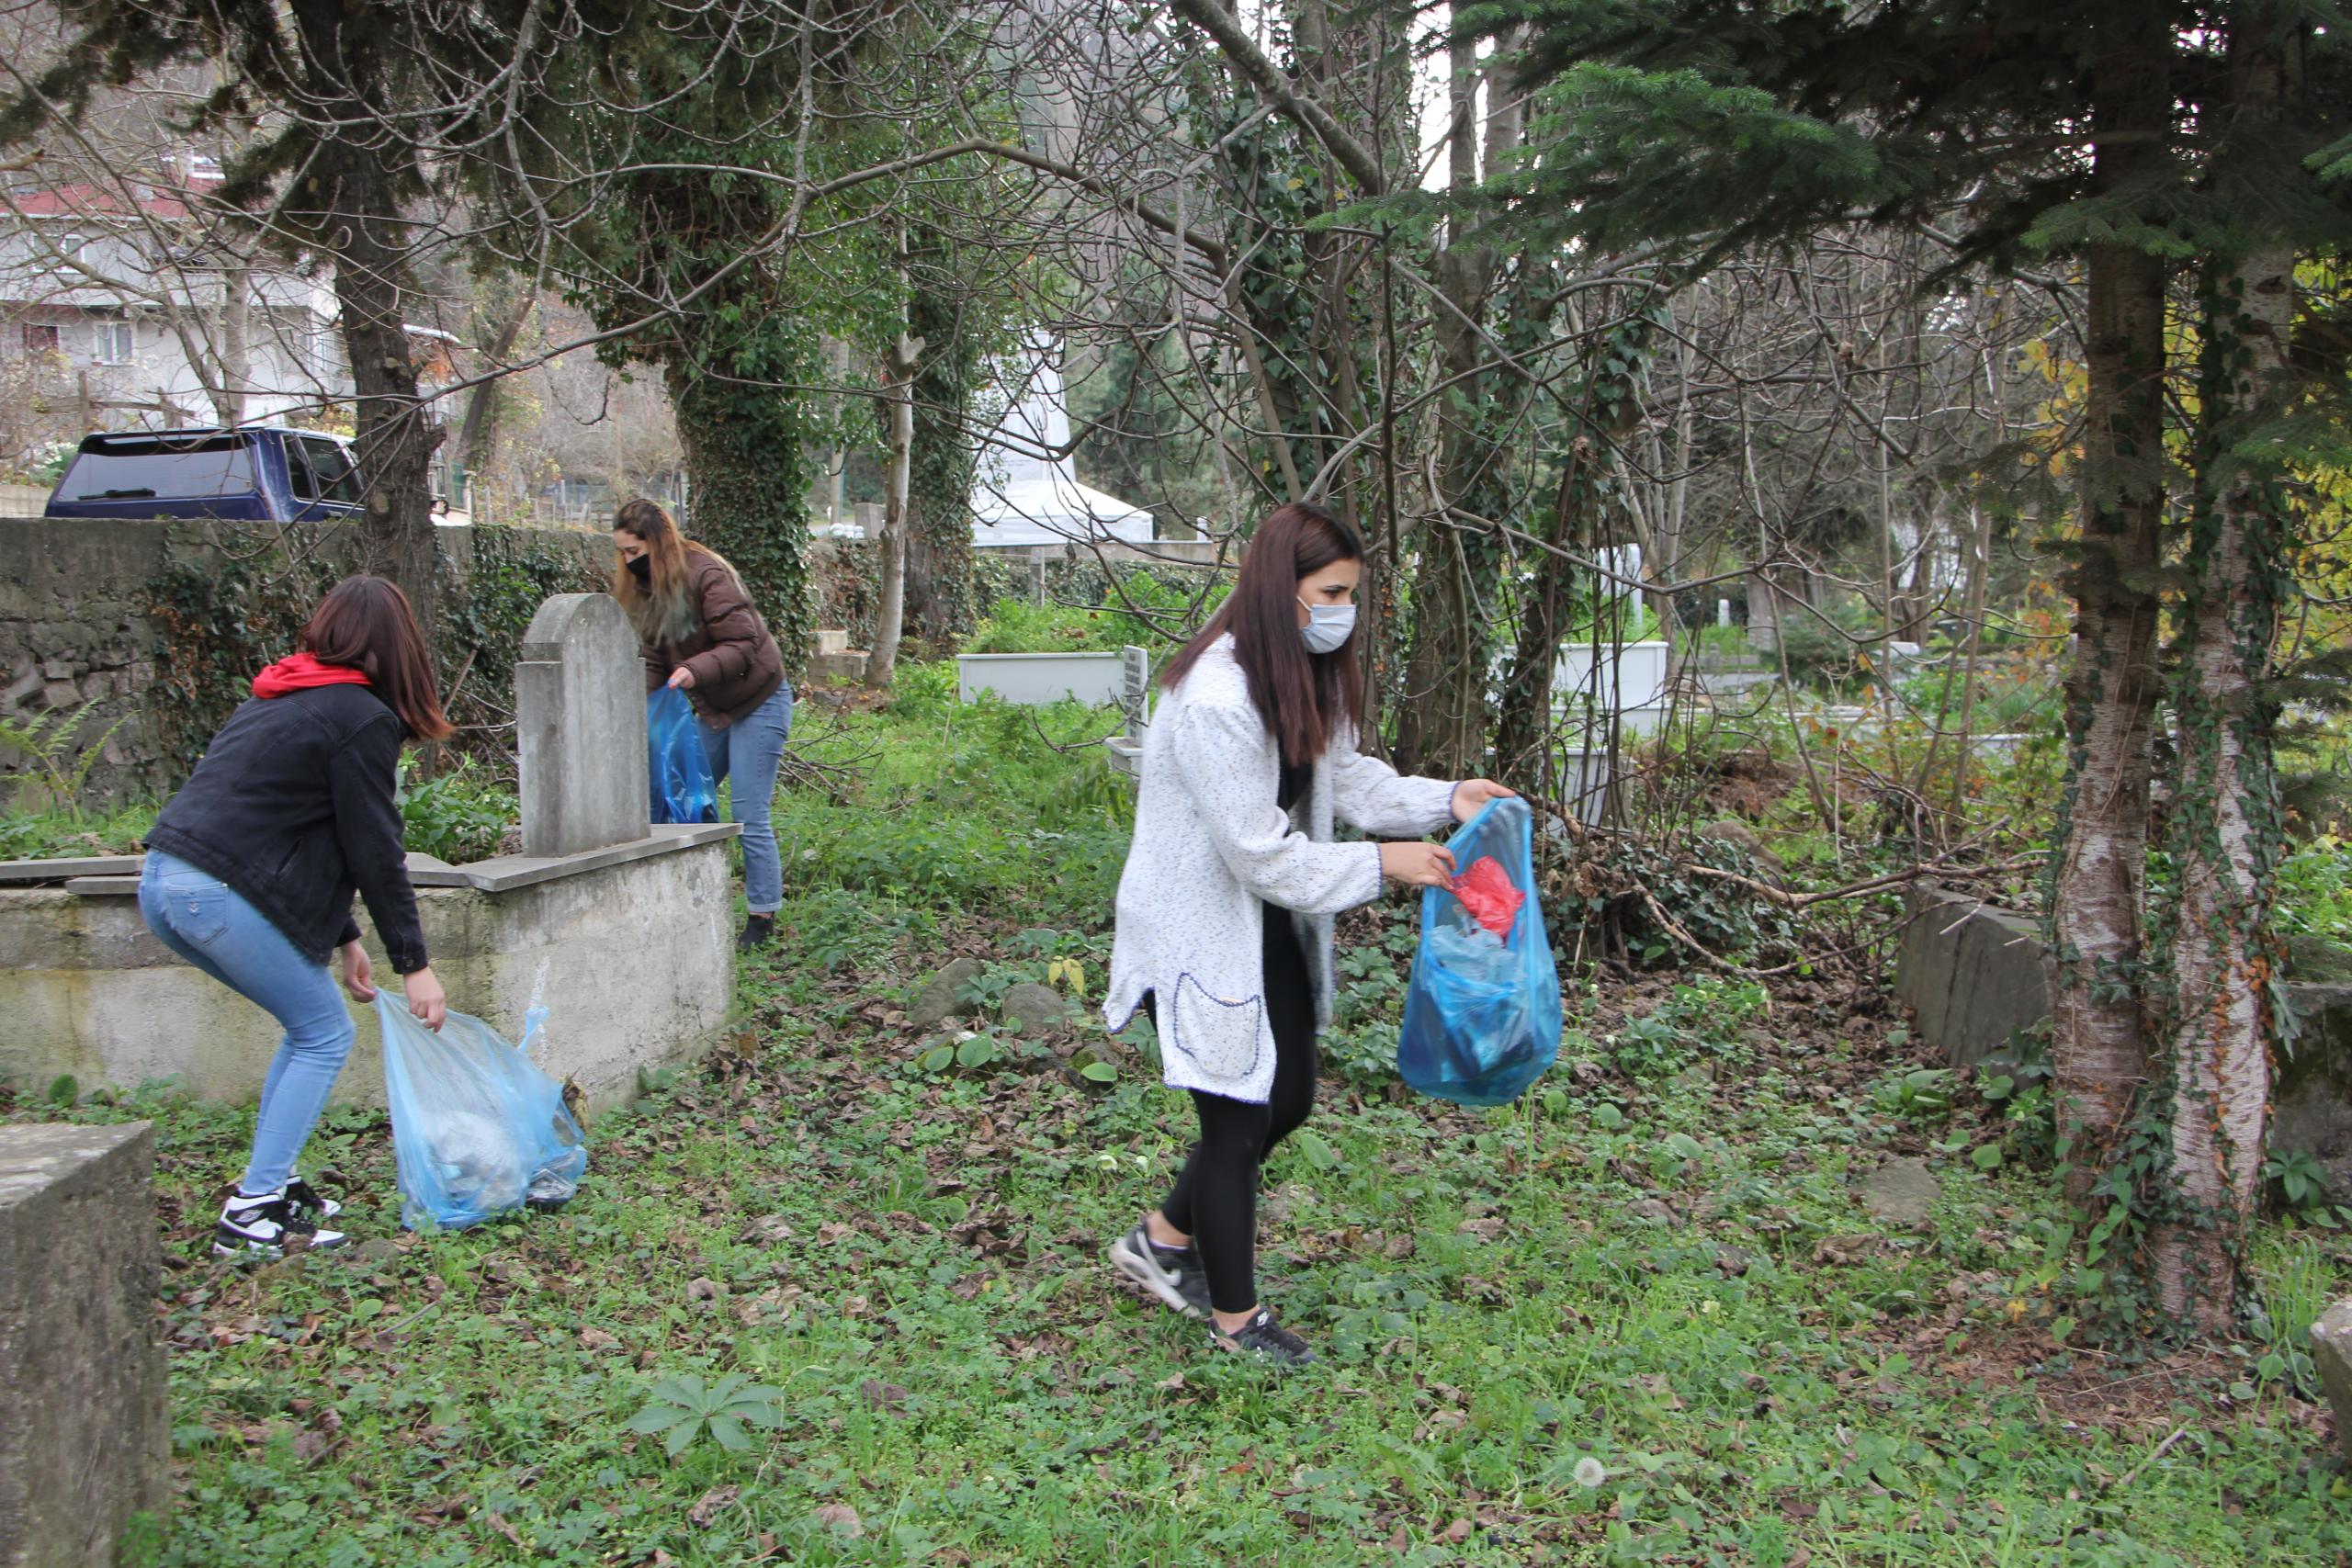 Öğrencilerden örnek etkinlik – Kurdukları grupla sokak hayvanlarını besleyip, çevre temizliği yapıyorlar